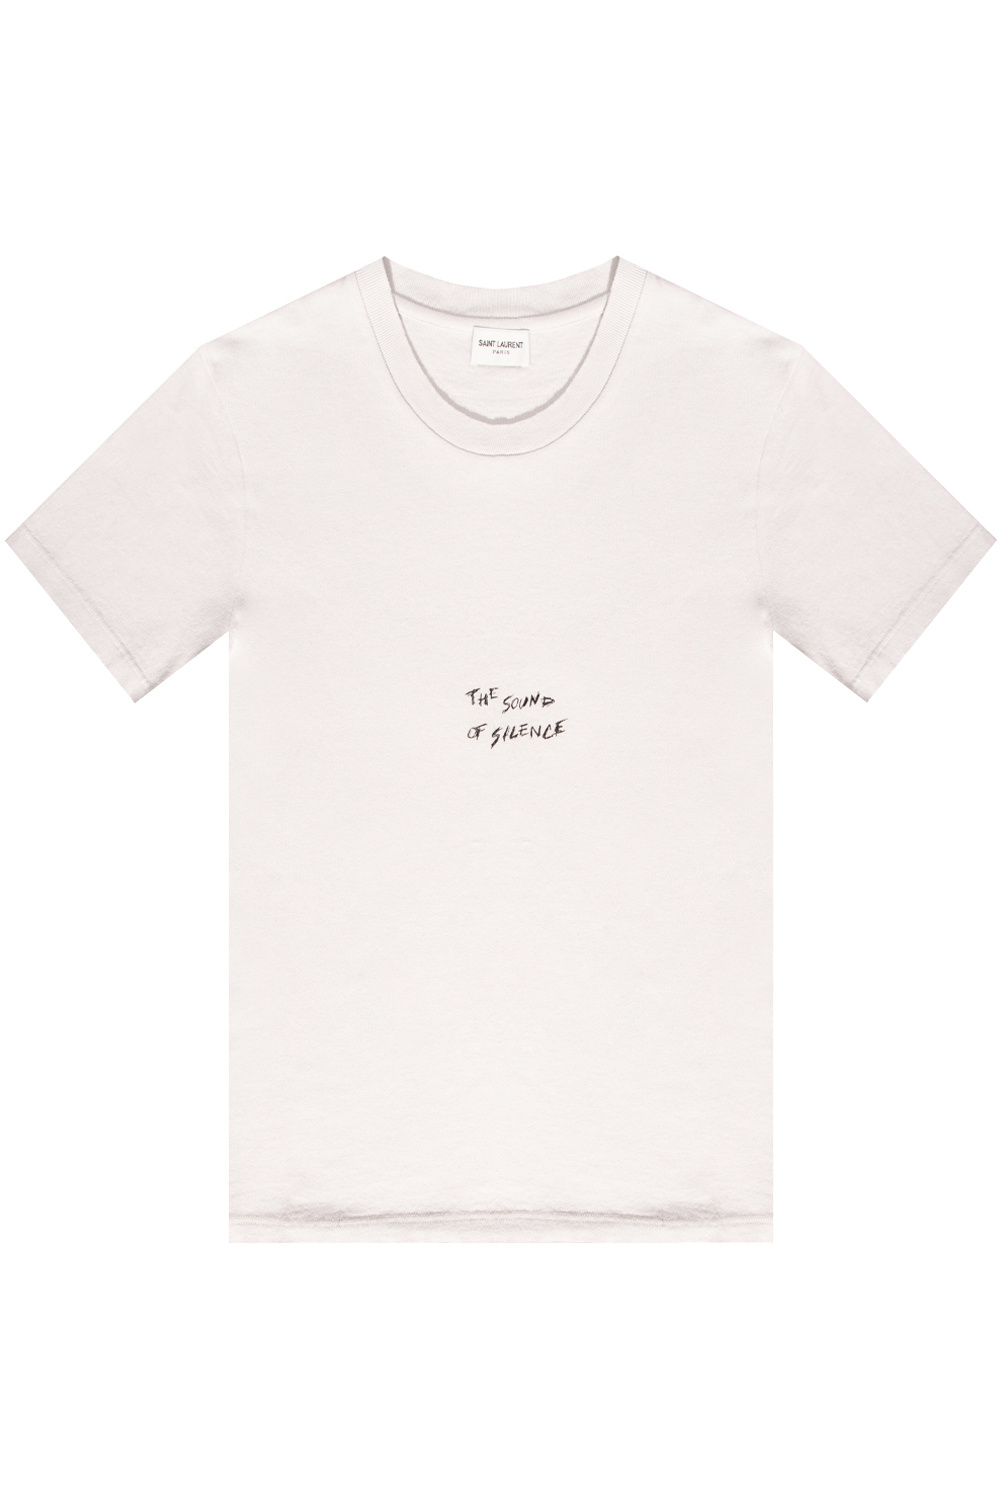 Saint Laurent T-shirt with lettering print